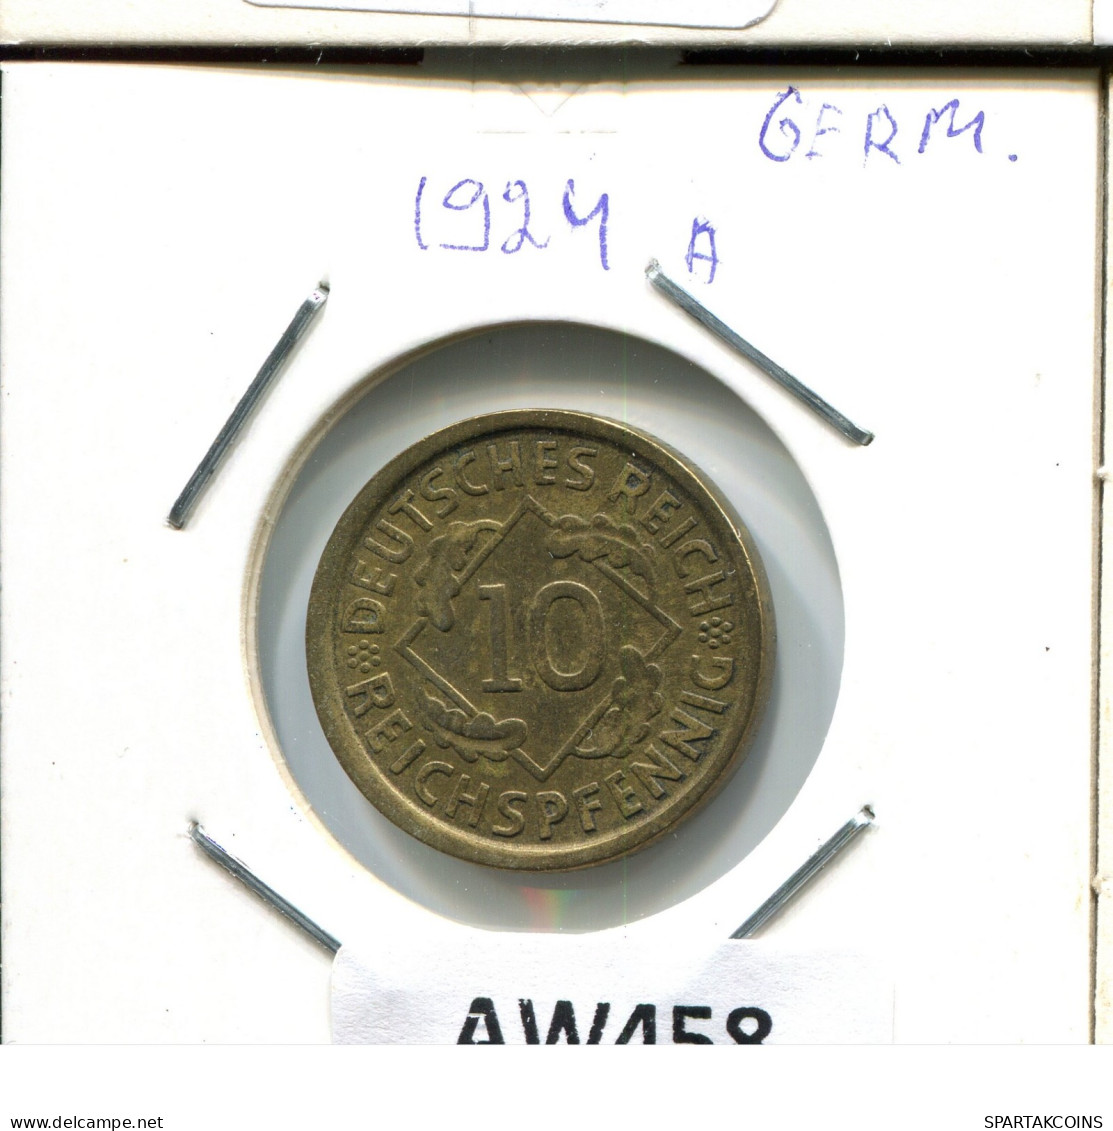 10 REISCHPFENNIG 1924 A GERMANY Coin #AW458.U.A - 10 Rentenpfennig & 10 Reichspfennig